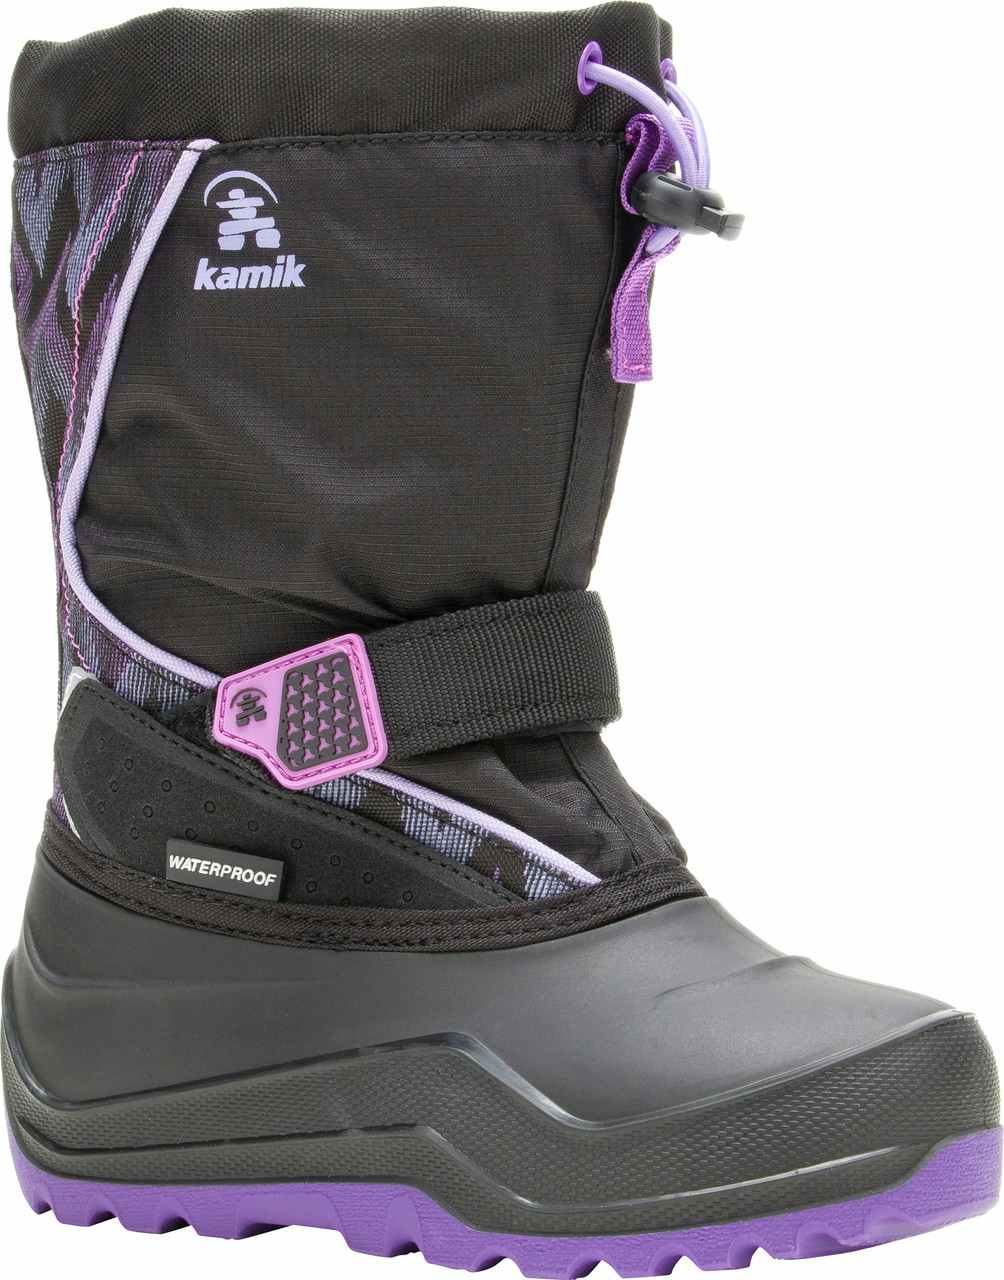 Snowfall P2 Waterproof Boots Black/Purple